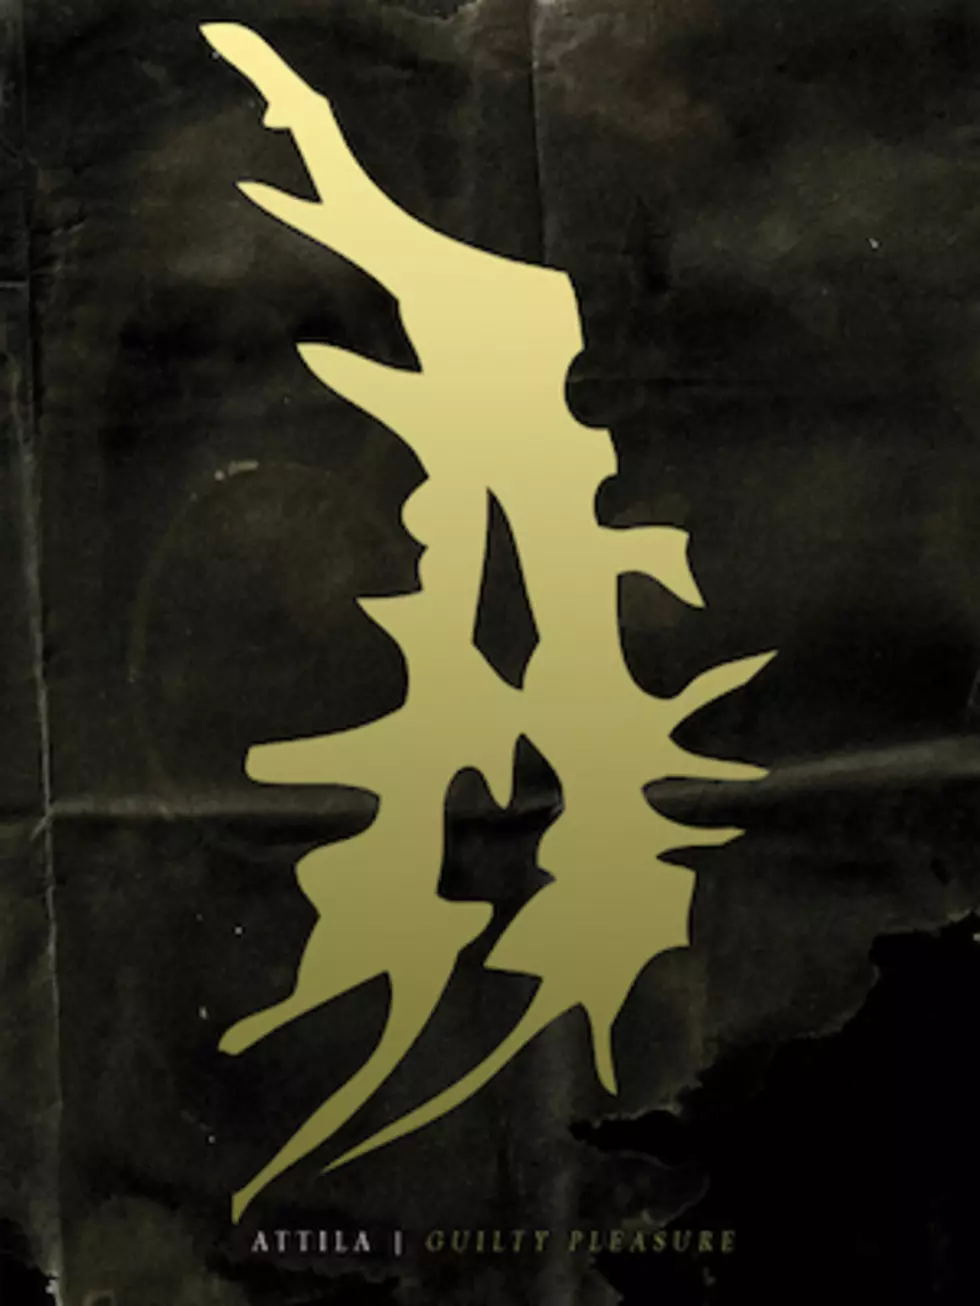 Attila Unveil New ‘Guilty Pleasure’ Album Details + 2014 Tour Dates